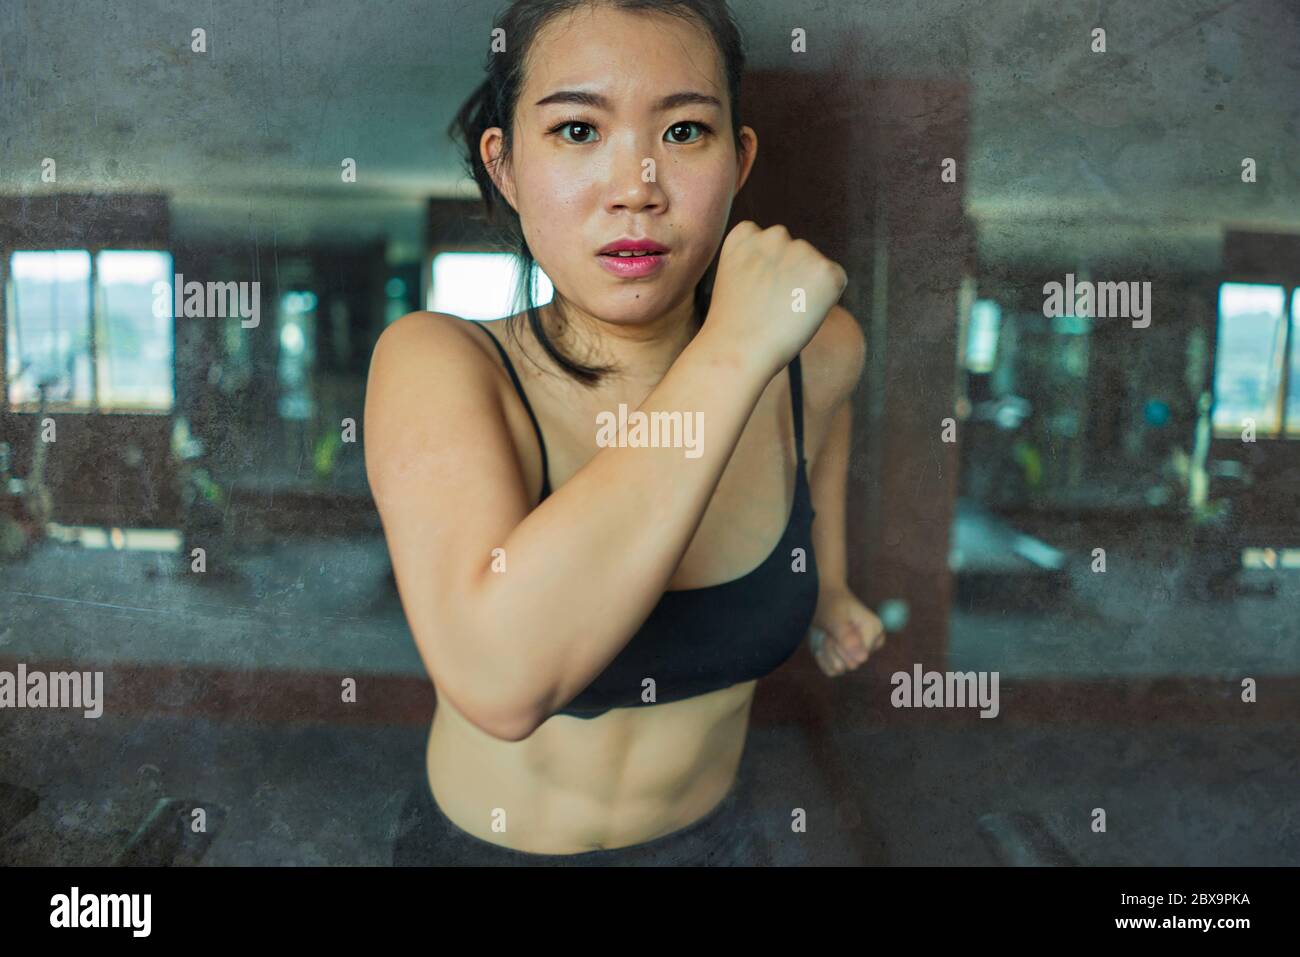 Jeune femme asiatique attirante et en forme de coréenne faisant de l'entraînement à la salle de gym de l'hôtel ou au club de fitness jogging dans l'entraînement de tapis roulant dur dans un style de vie sain Banque D'Images